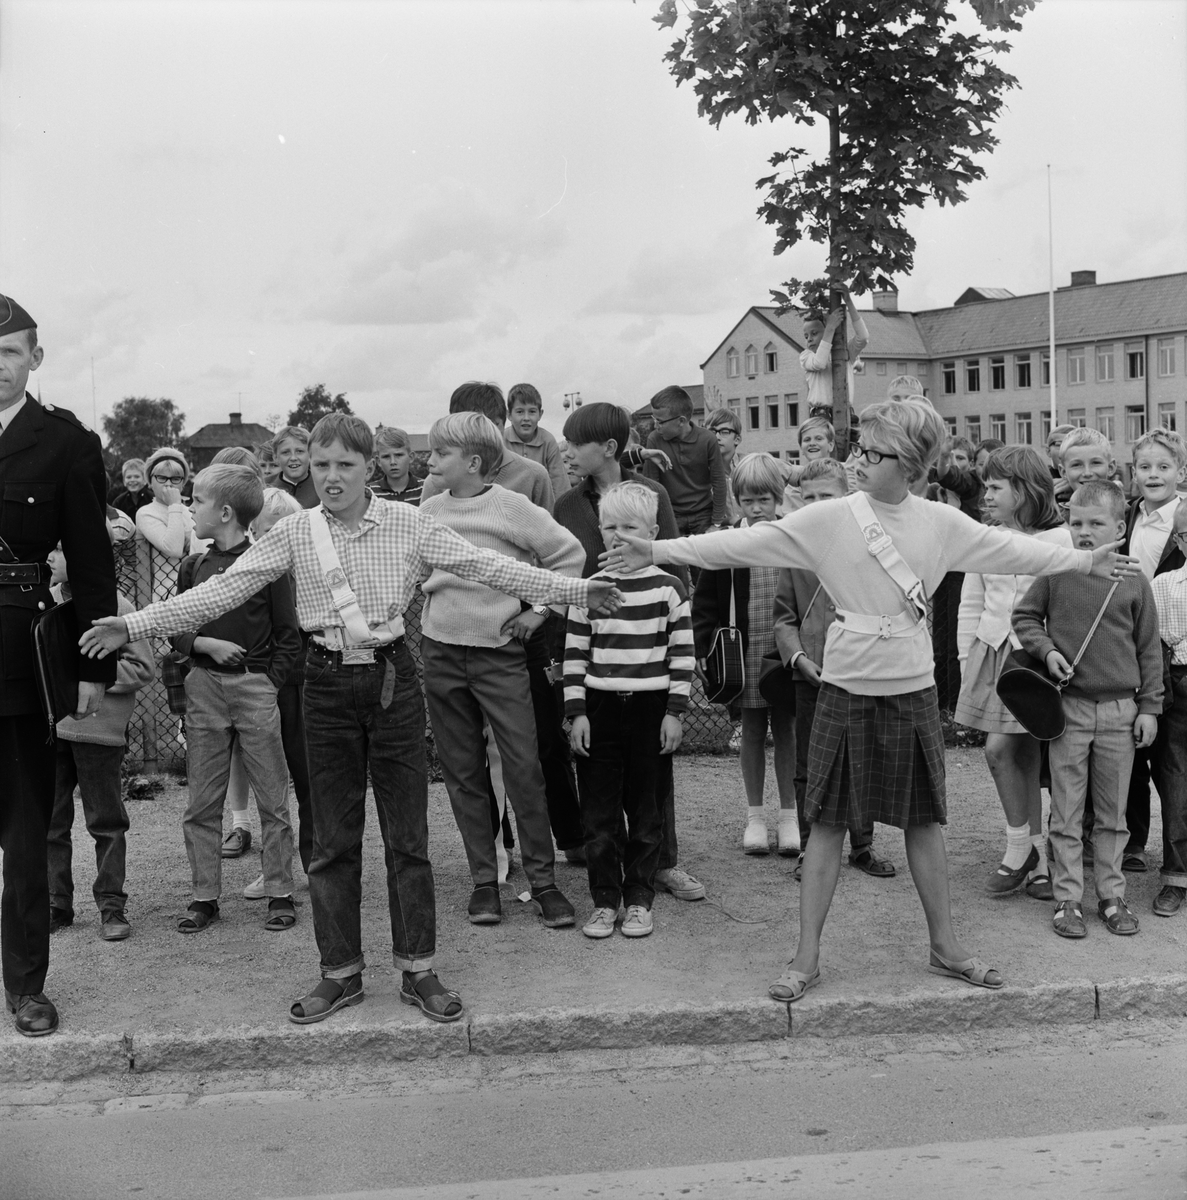 "200 uppsalabarn trafikövervakare vid folkskolorna", Uppsala augusti 1965